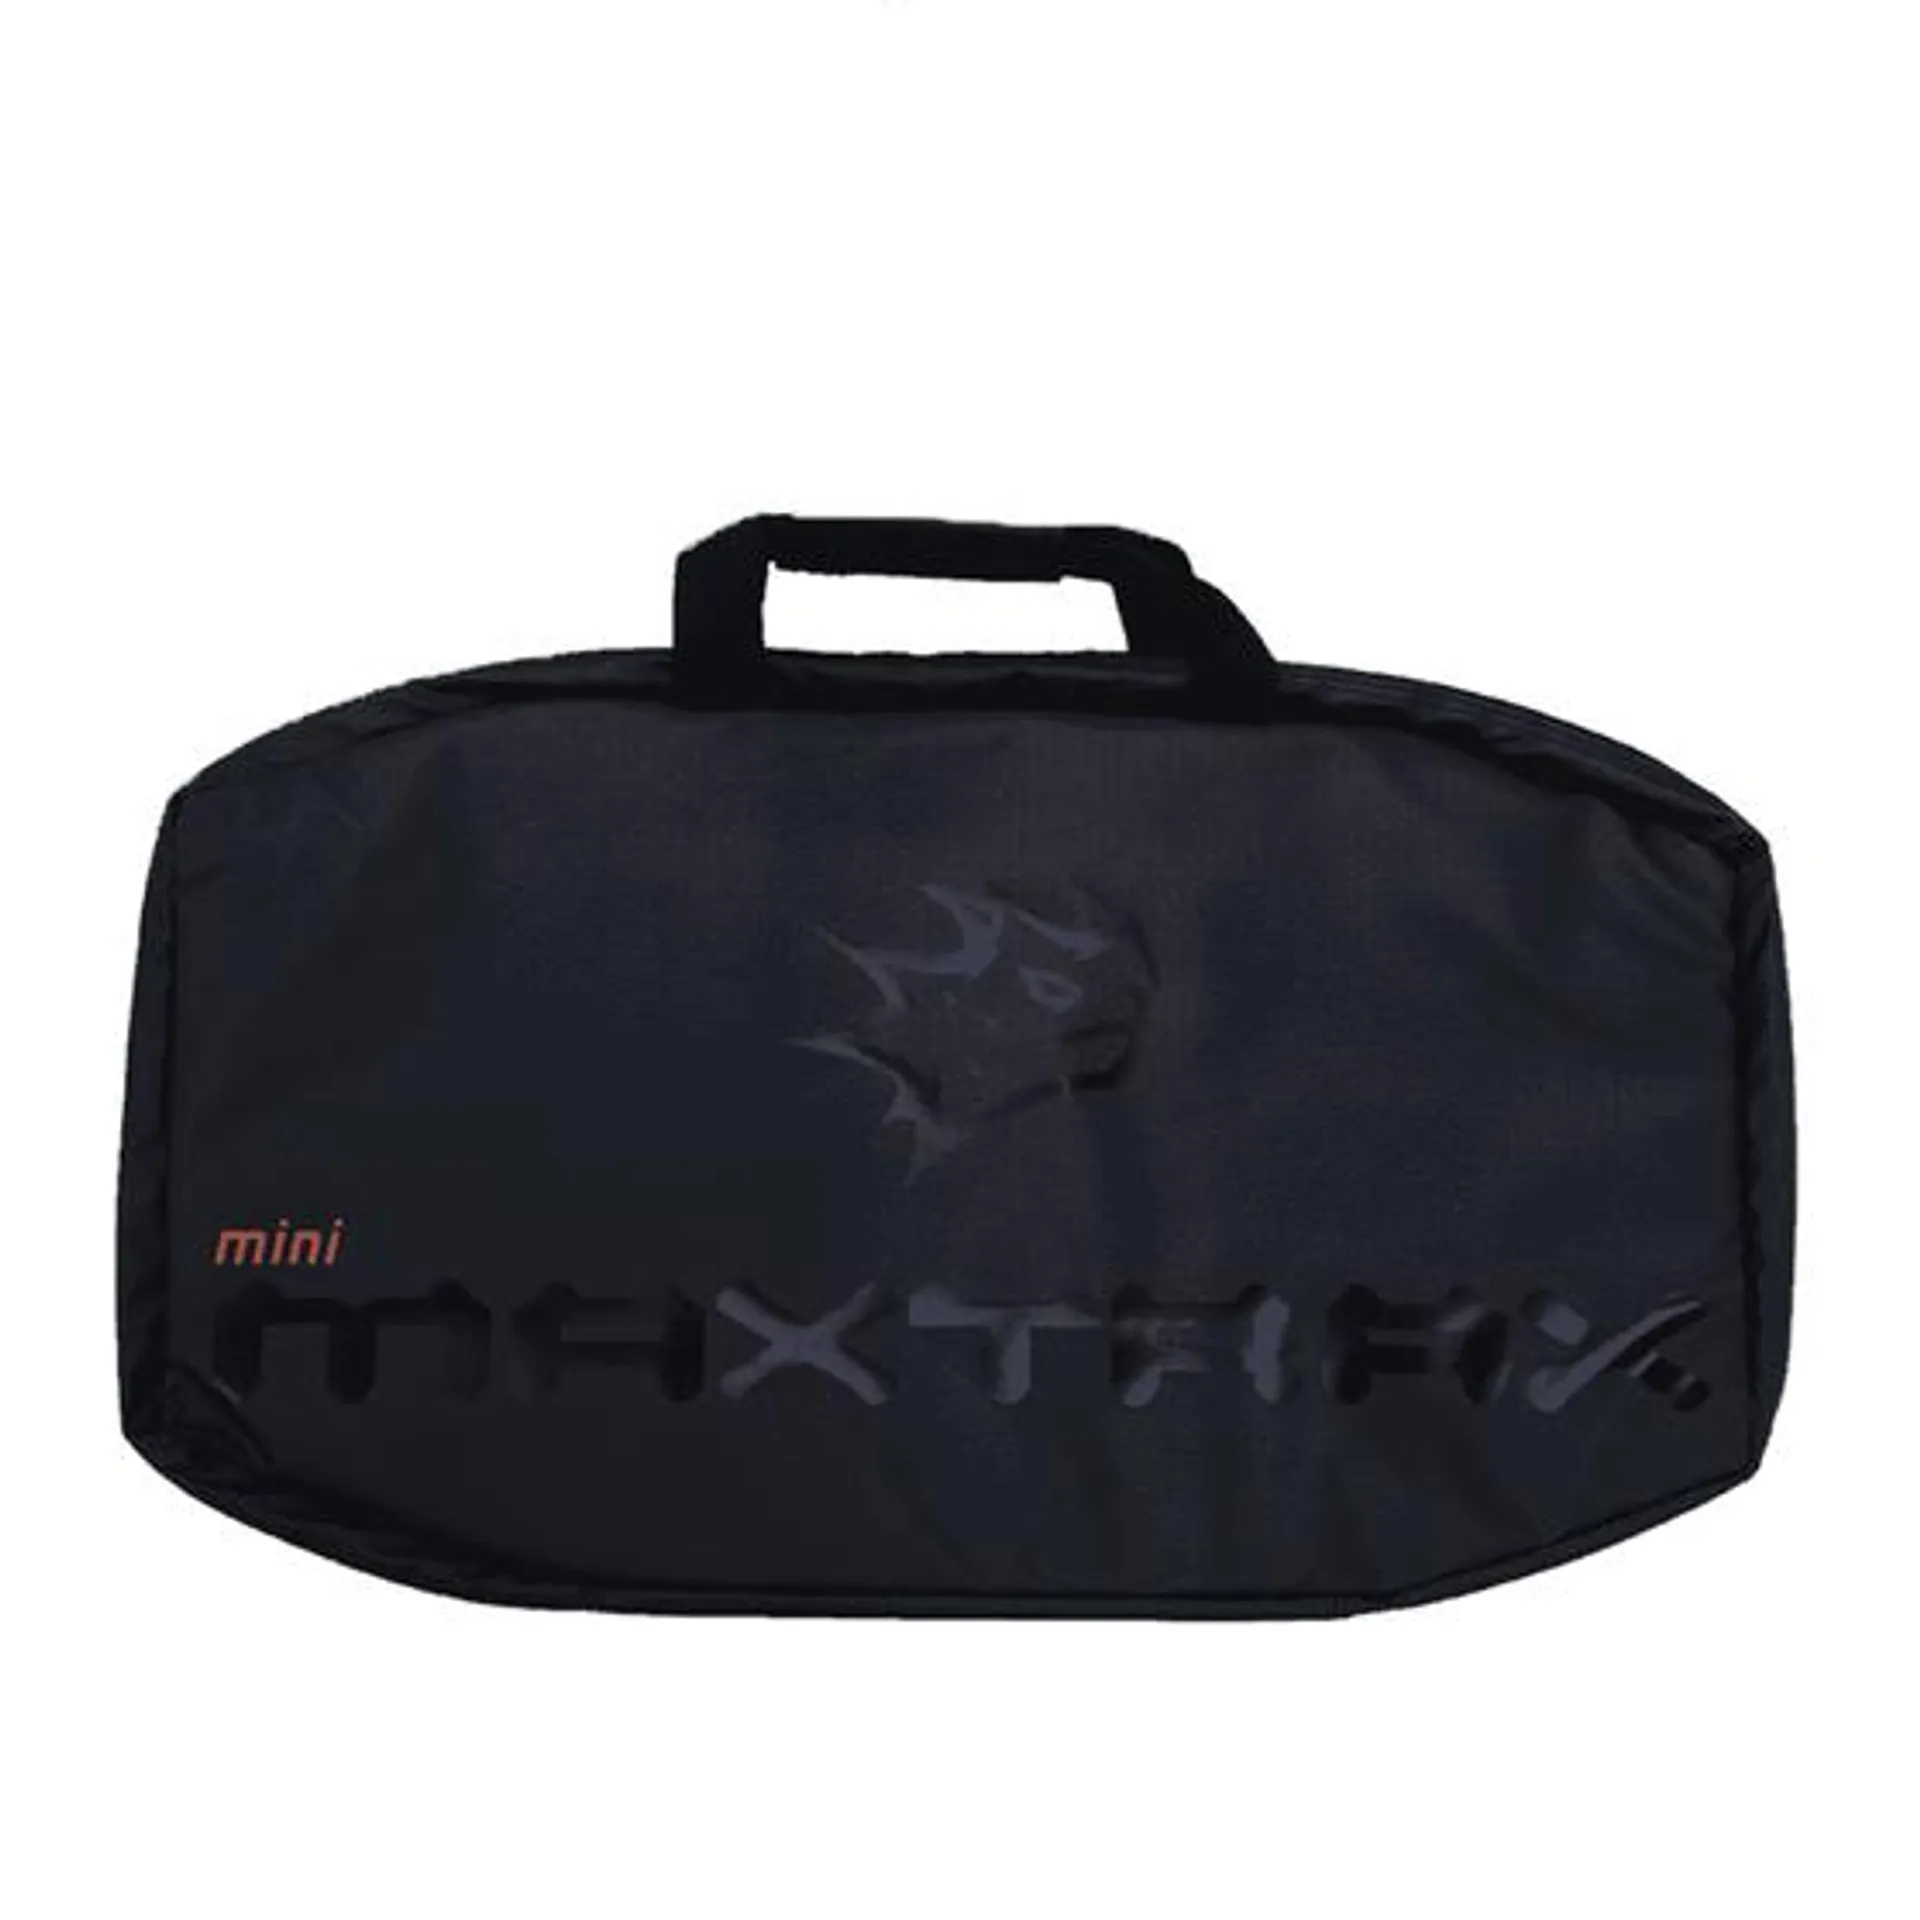 Maxtrax Mini Carry Bag Black - MTXMB